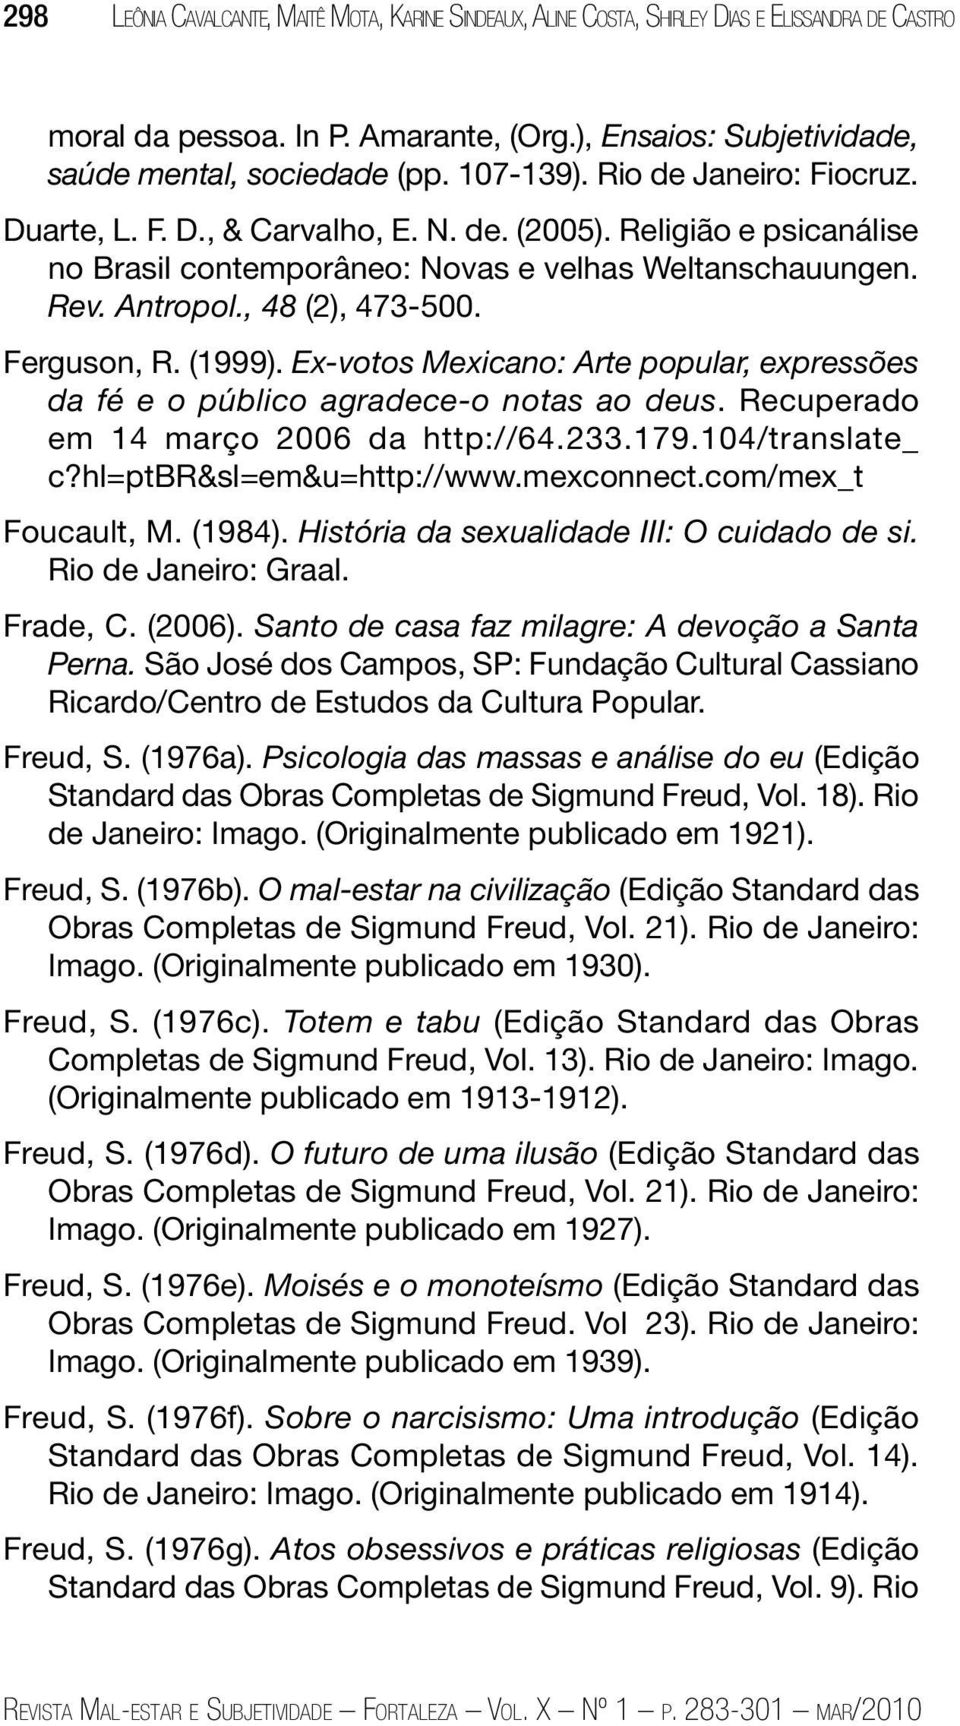 Ferguson, R. (1999). Ex-votos Mexicano: Arte popular, expressões da fé e o público agradece-o notas ao deus. Recuperado em 14 março 2006 da http://64.233.179.104/translate_ c?